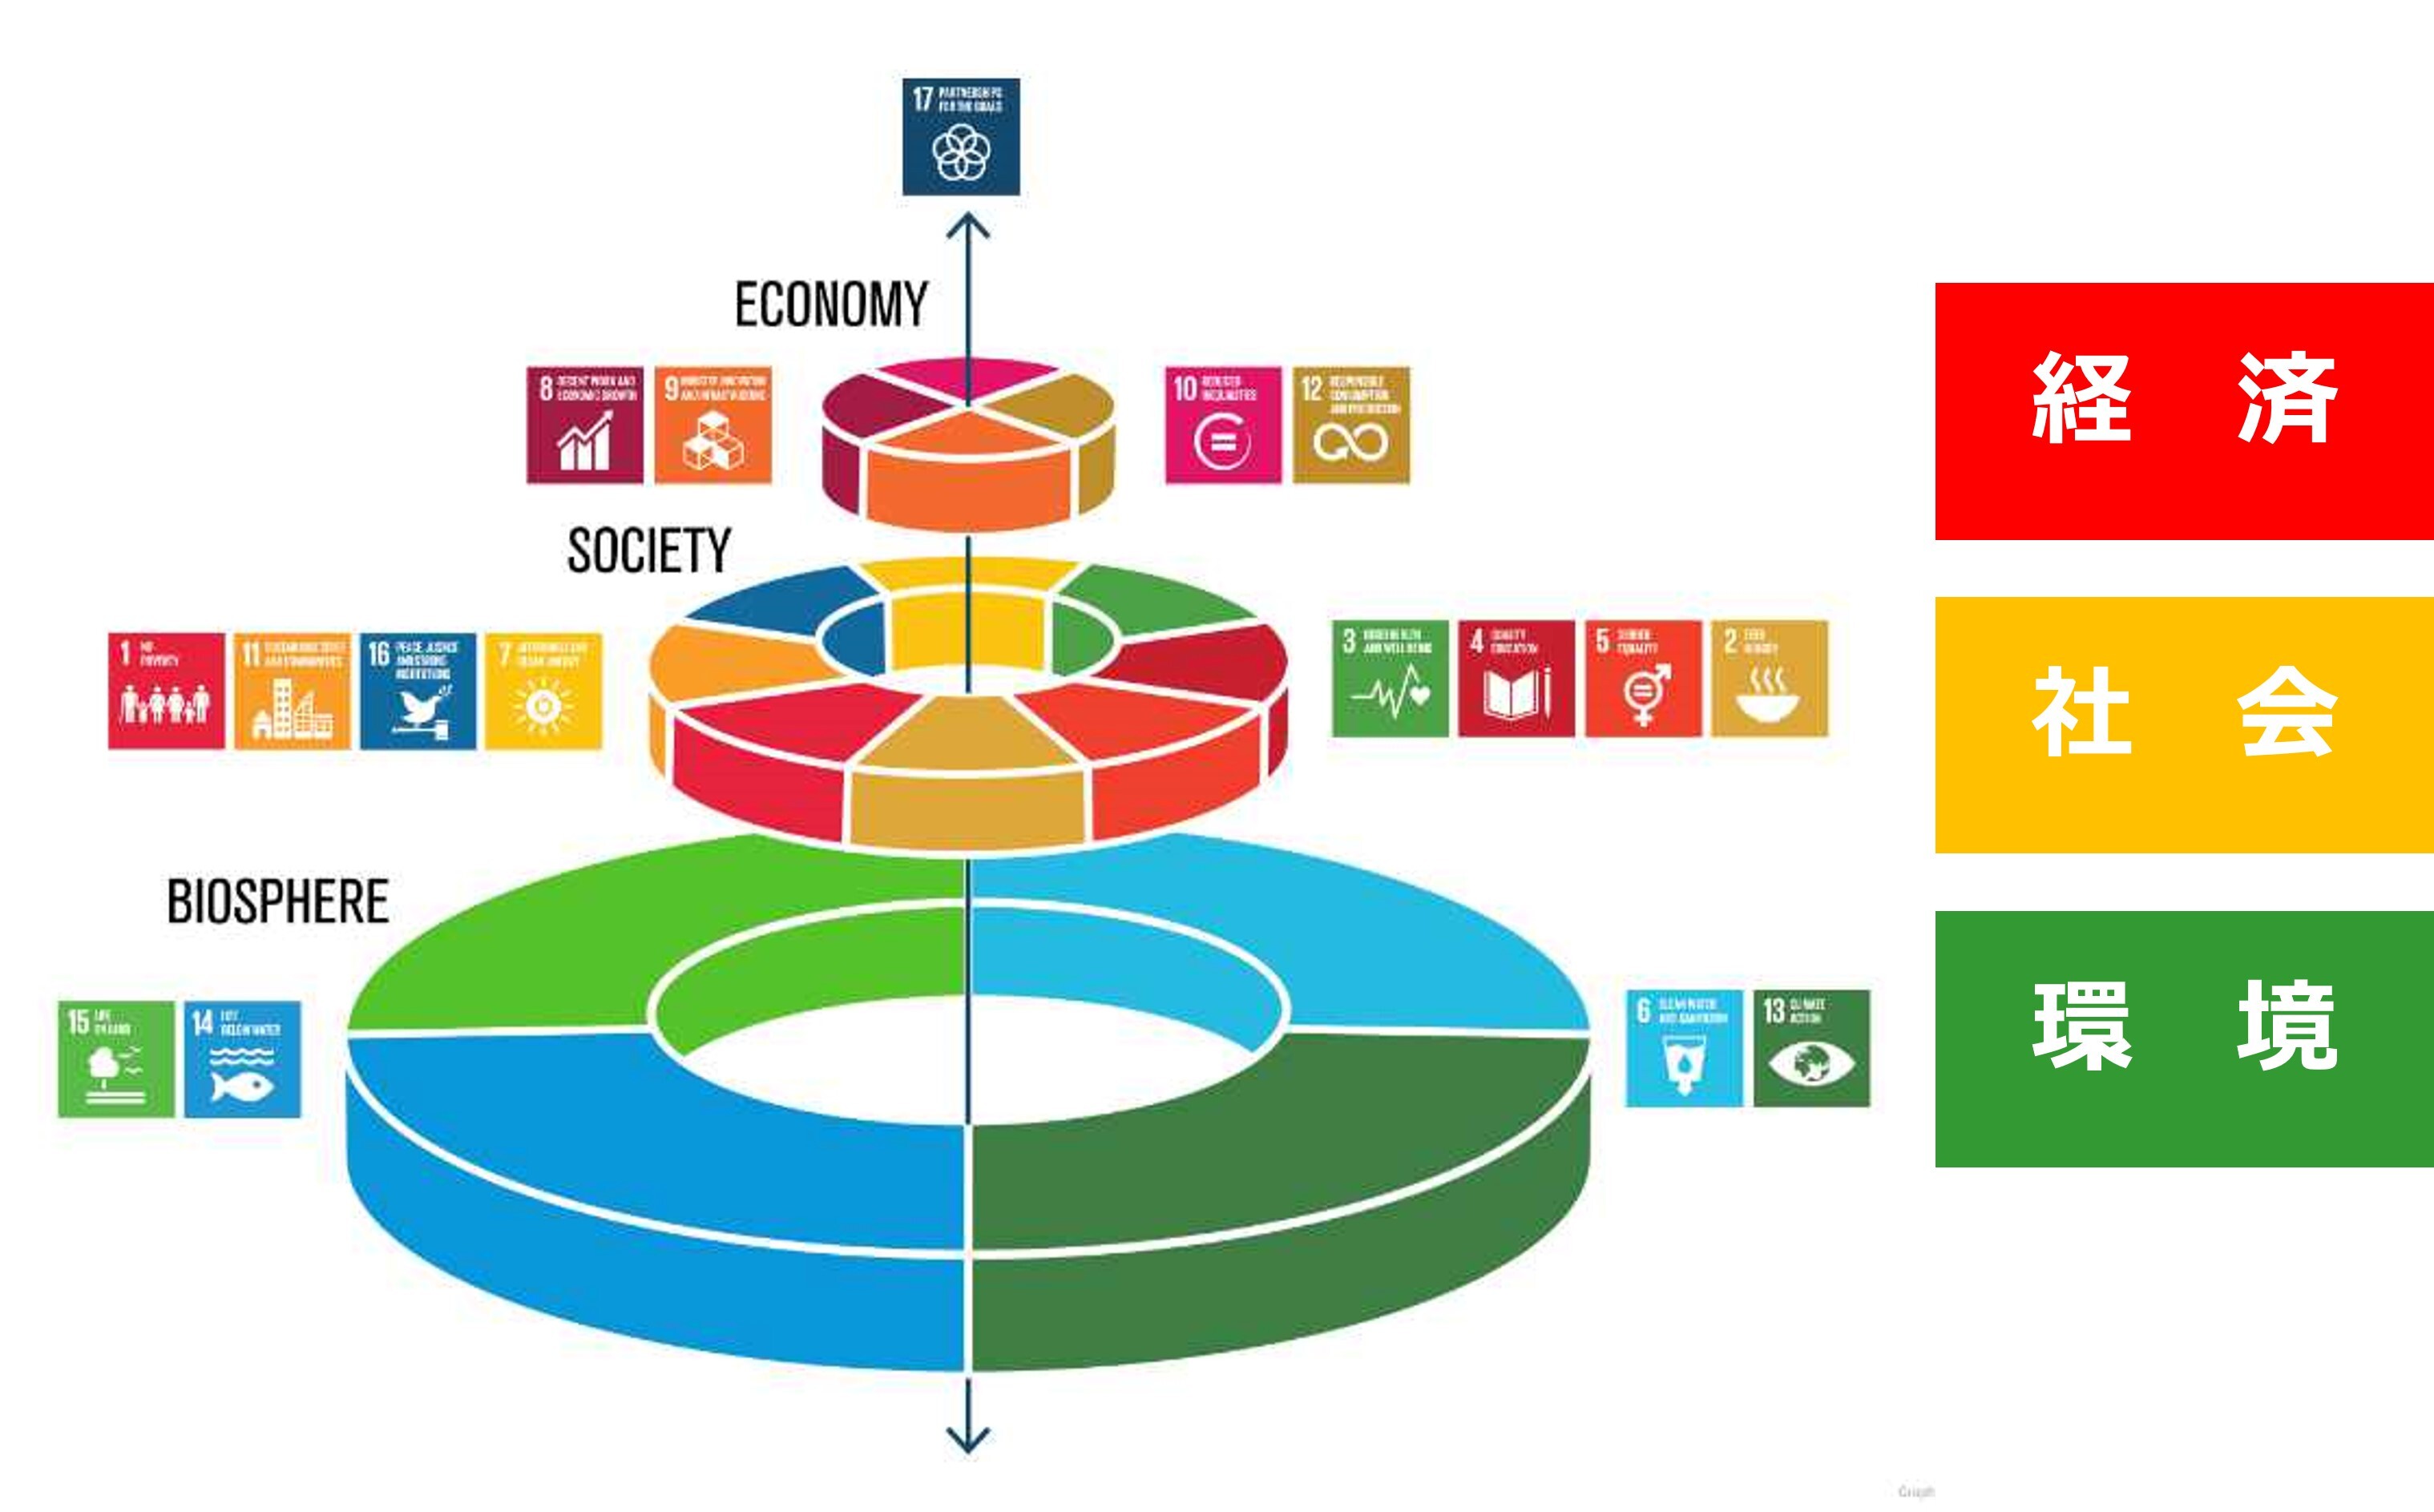 SDGSは社会・経済・環境の3つの階層において、それぞれに関連する課題があることを示した図